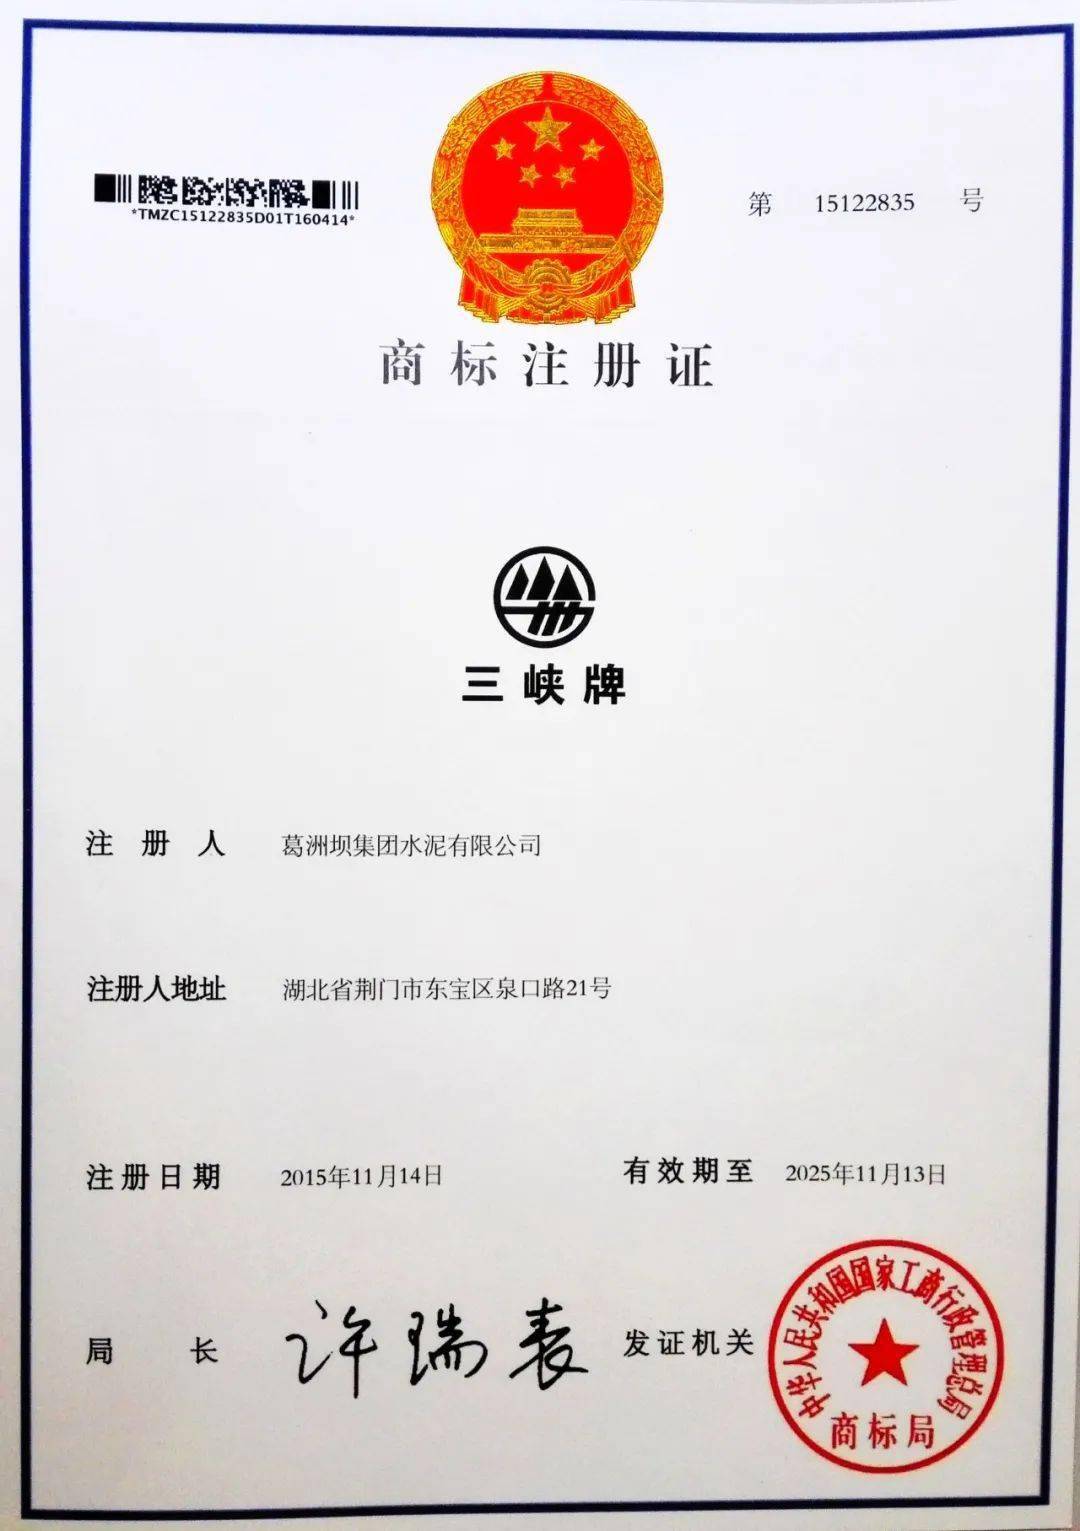 新版"三峡牌"商标及商标注册证书